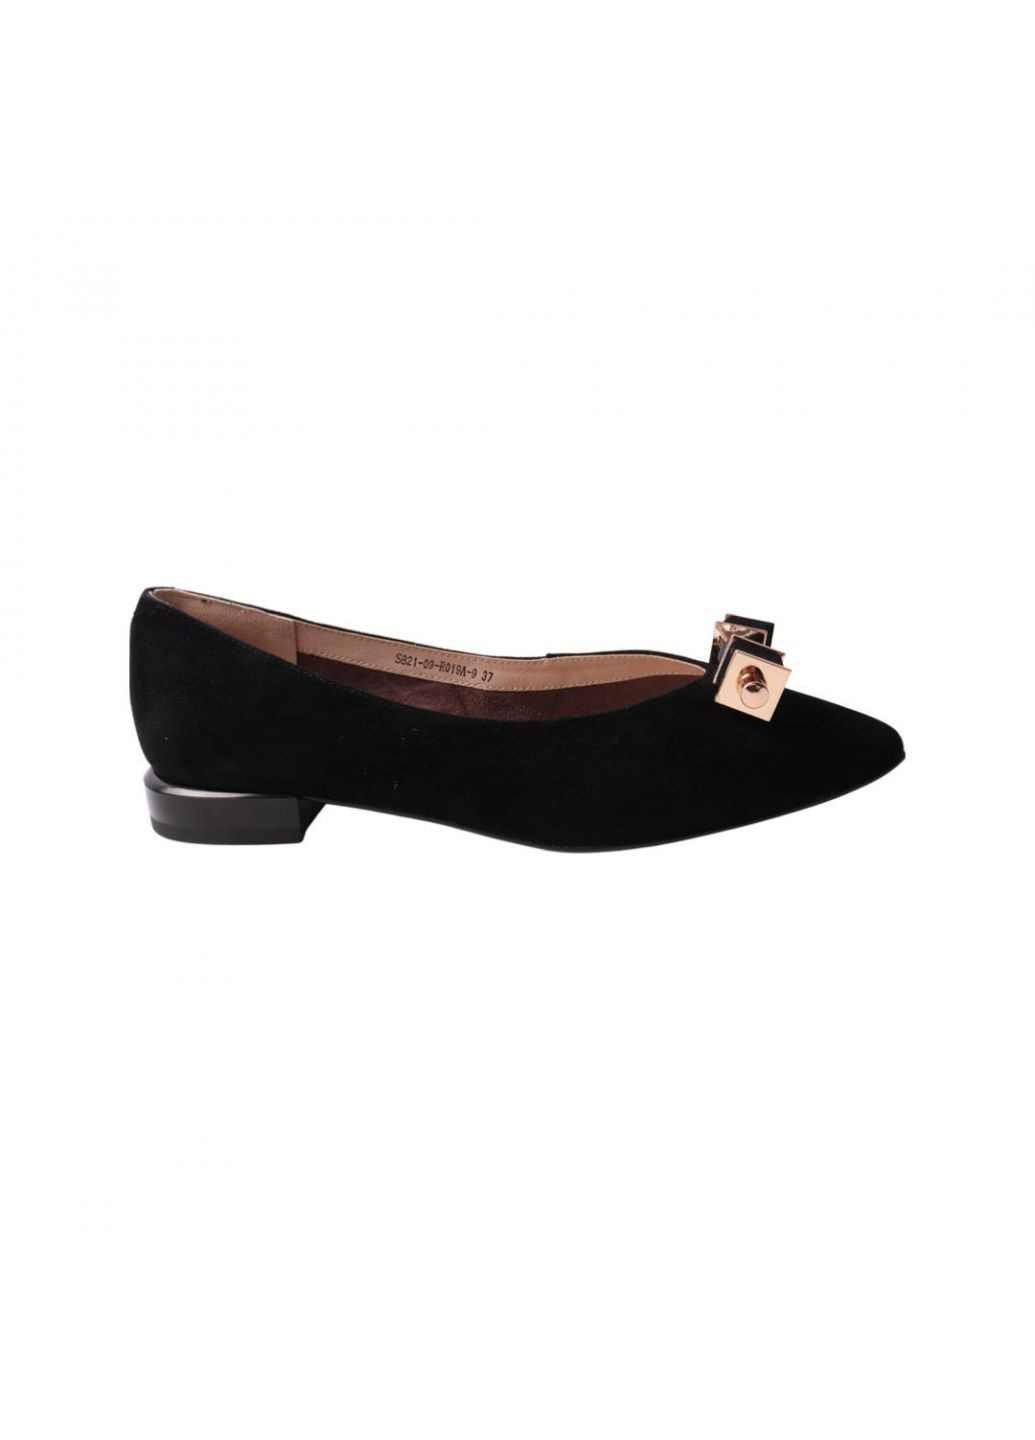 Туфлі жіночі чорні натуральна замша Lady Marcia 215-22dtc (257440209)